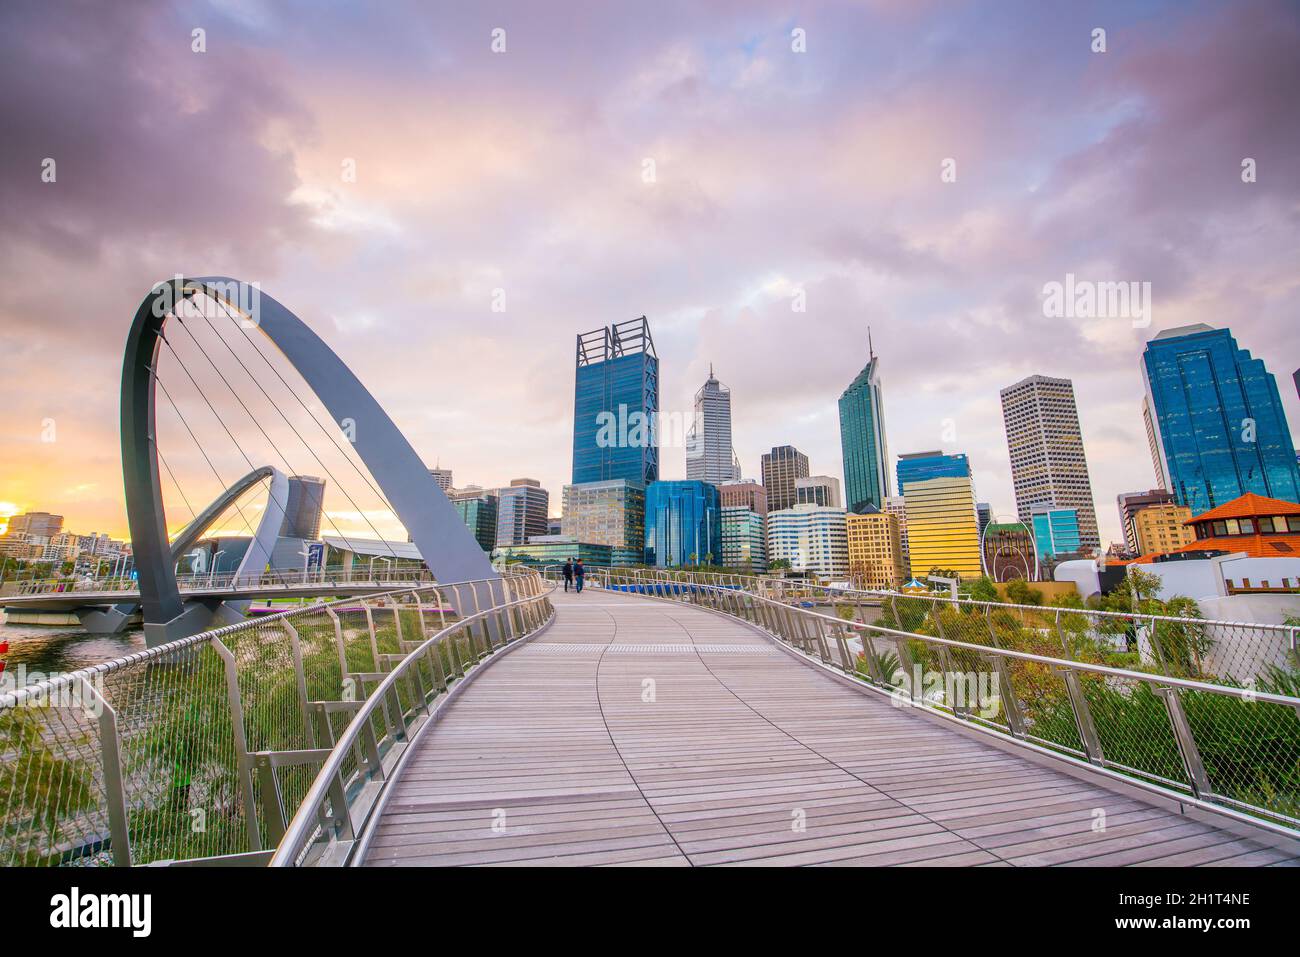 El horizonte del centro de Perth en Australia al atardecer Foto de stock